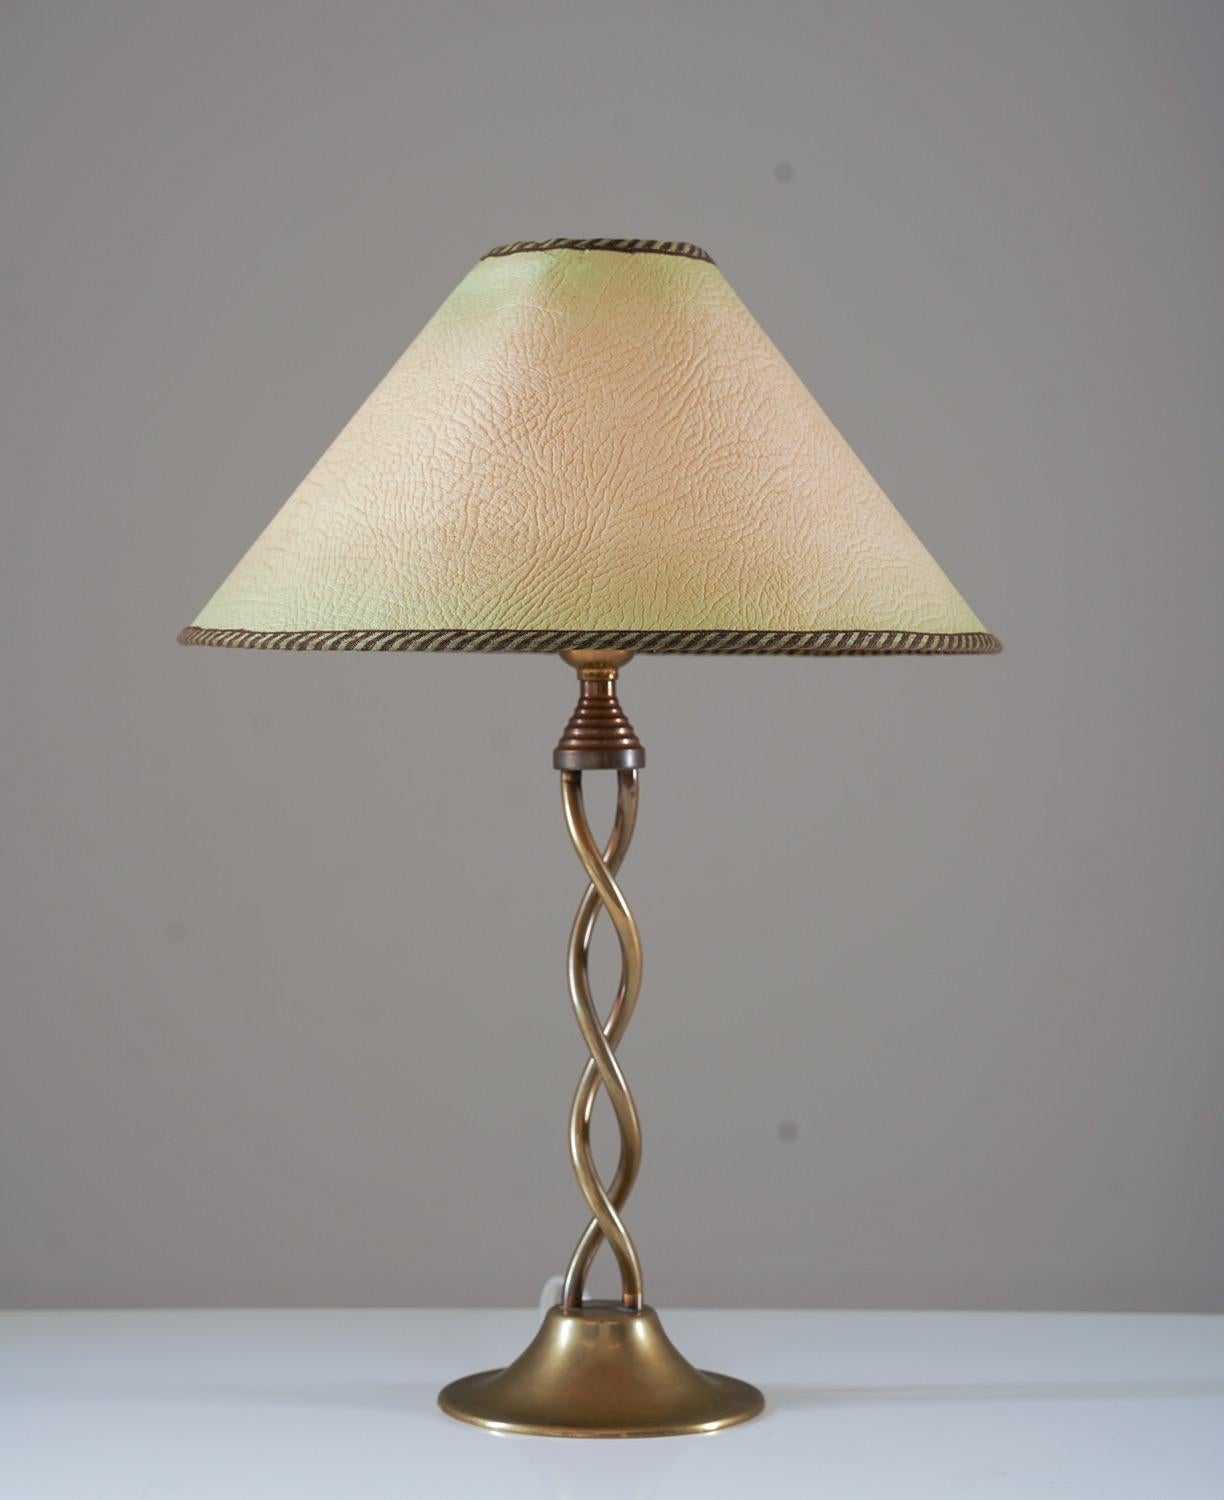 Schwedische moderne Tischlampe aus Messing, wahrscheinlich in Schweden hergestellt, 1930er Jahre.

Zustand: Sehr guter Zustand. Die Lampen werden mit einem passenden Vintage-Schirm aus der gleichen Zeit geliefert.